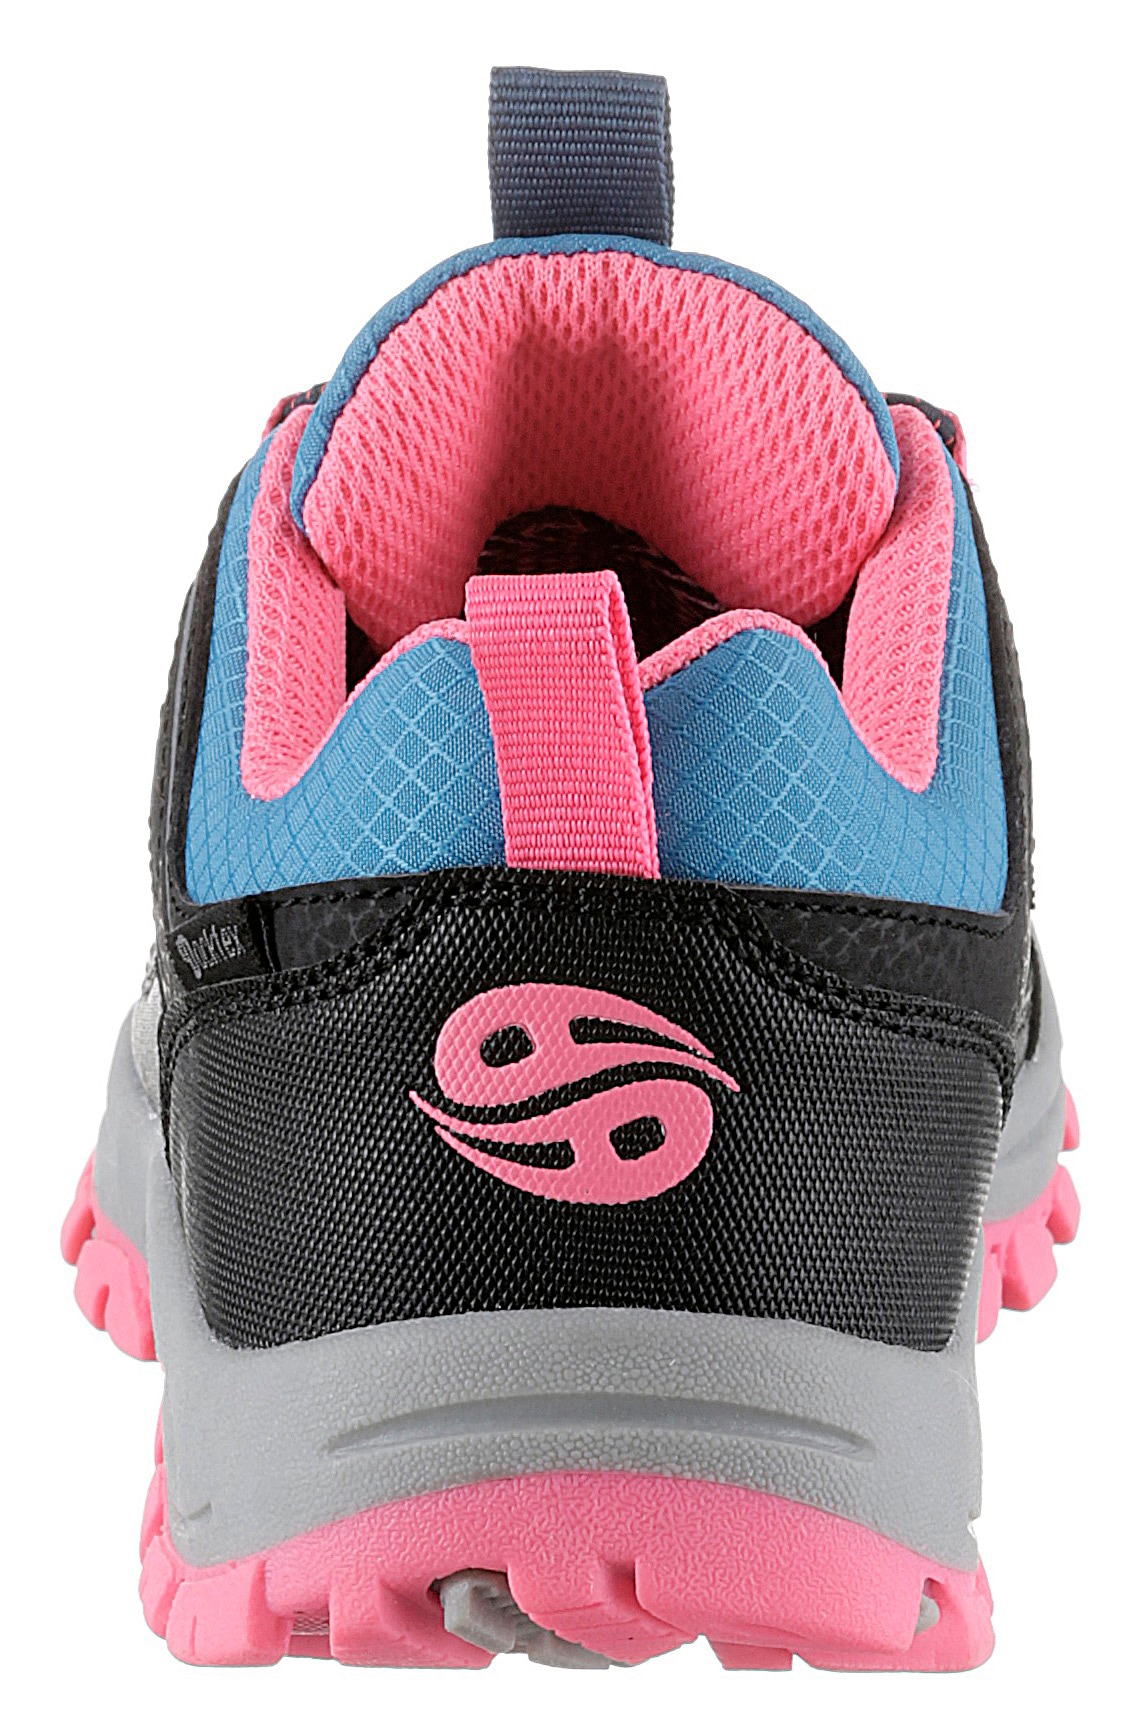 Dockers by Gerli Slip-On Sneaker, mit Schnellverschluss für die Kleinsten |  günstig bei I\'m walking